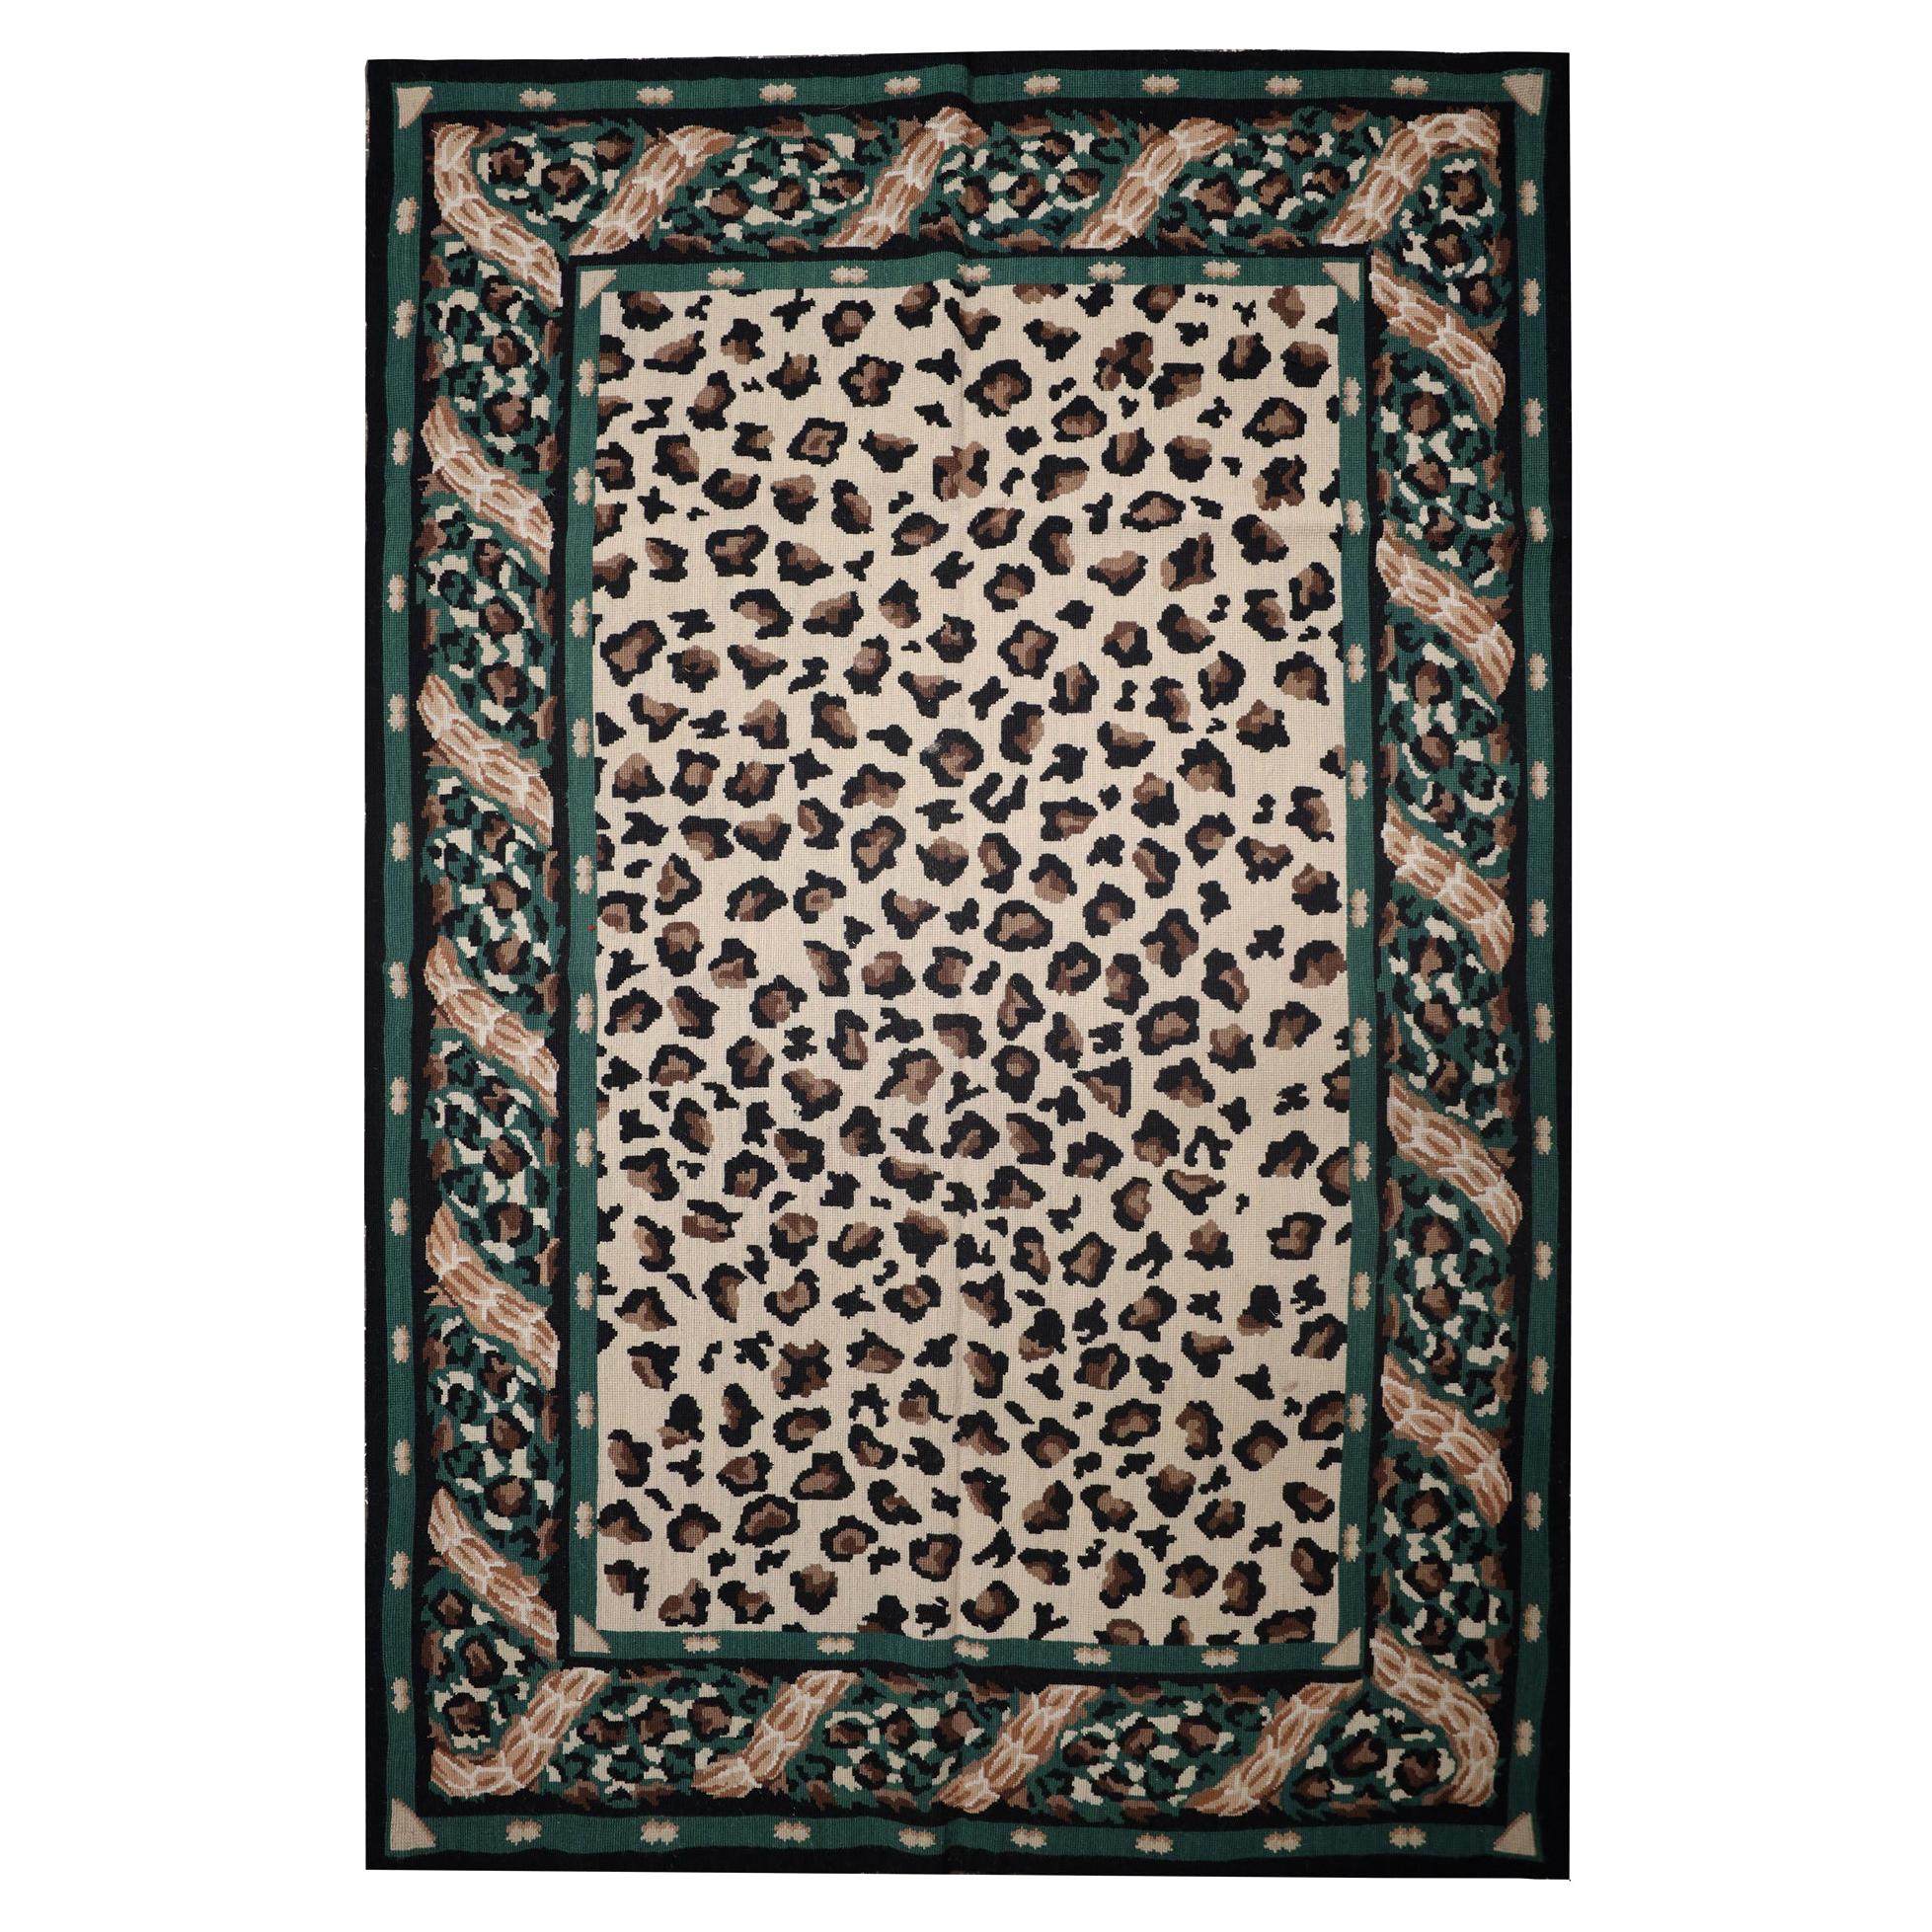 Tapis moderne fait main, tapis à l'aiguille, tapis vert à imprimé léopard